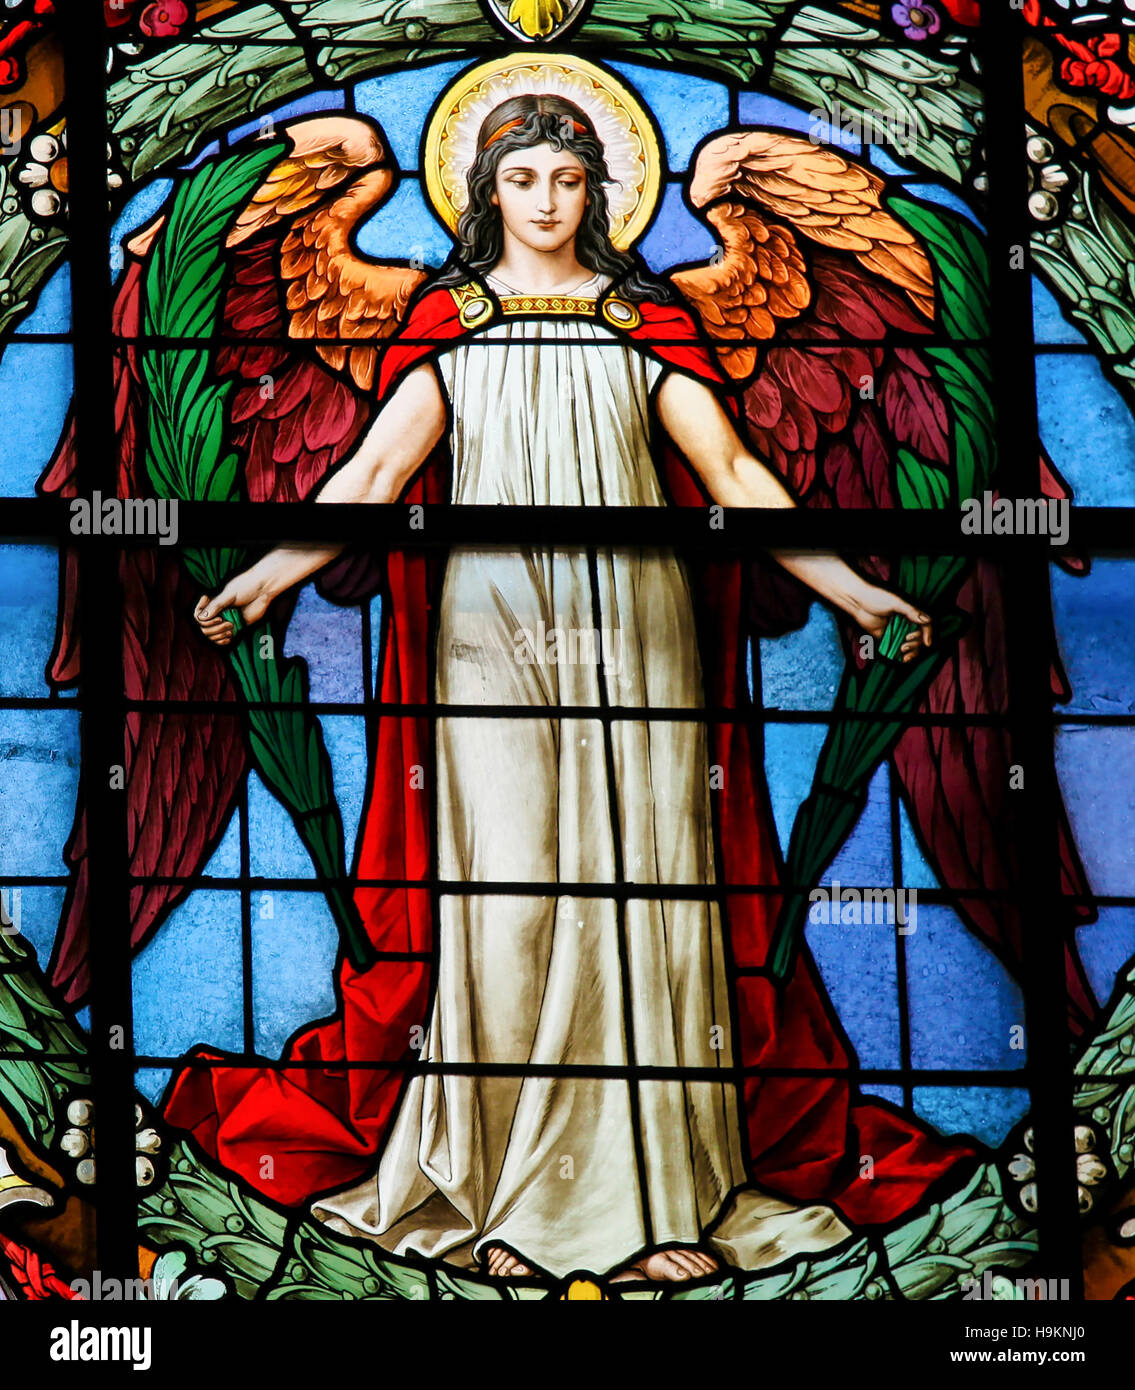 Engel mit Flügeln - Glasfenster in der deutschen Kirche von Stockholm, Schweden Stockfoto